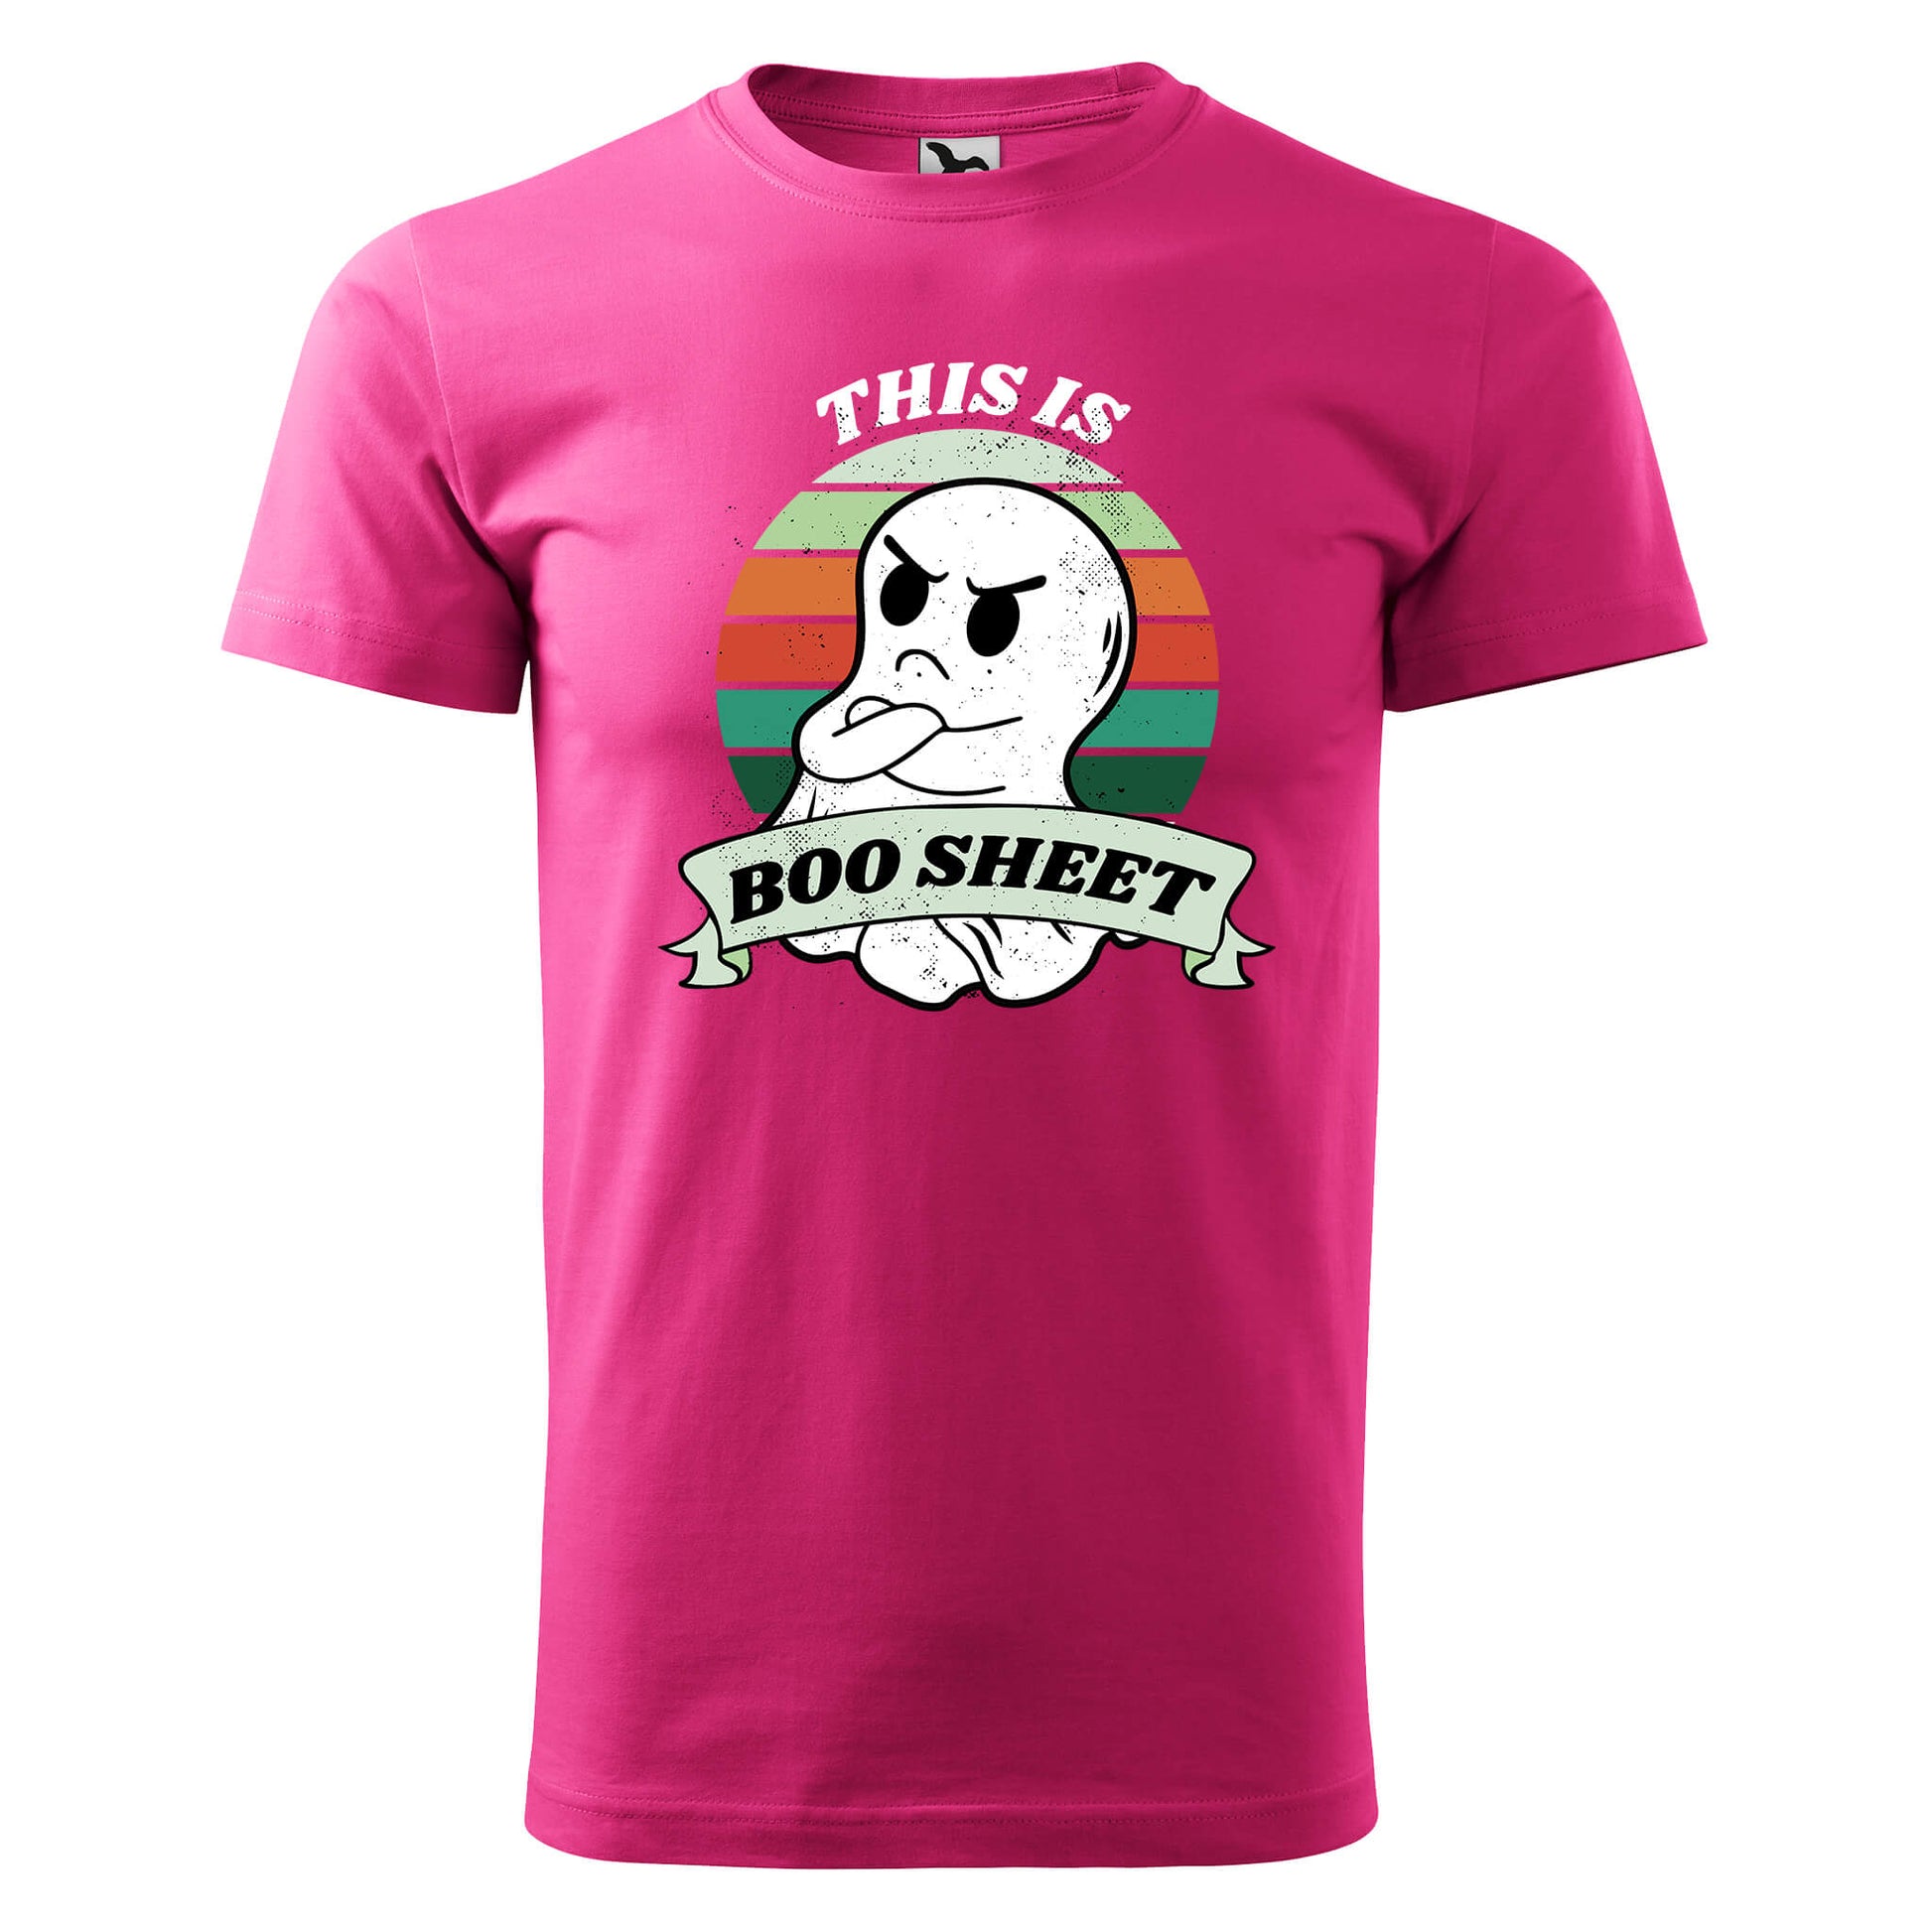 Boo sheet t-shirt - rvdesignprint